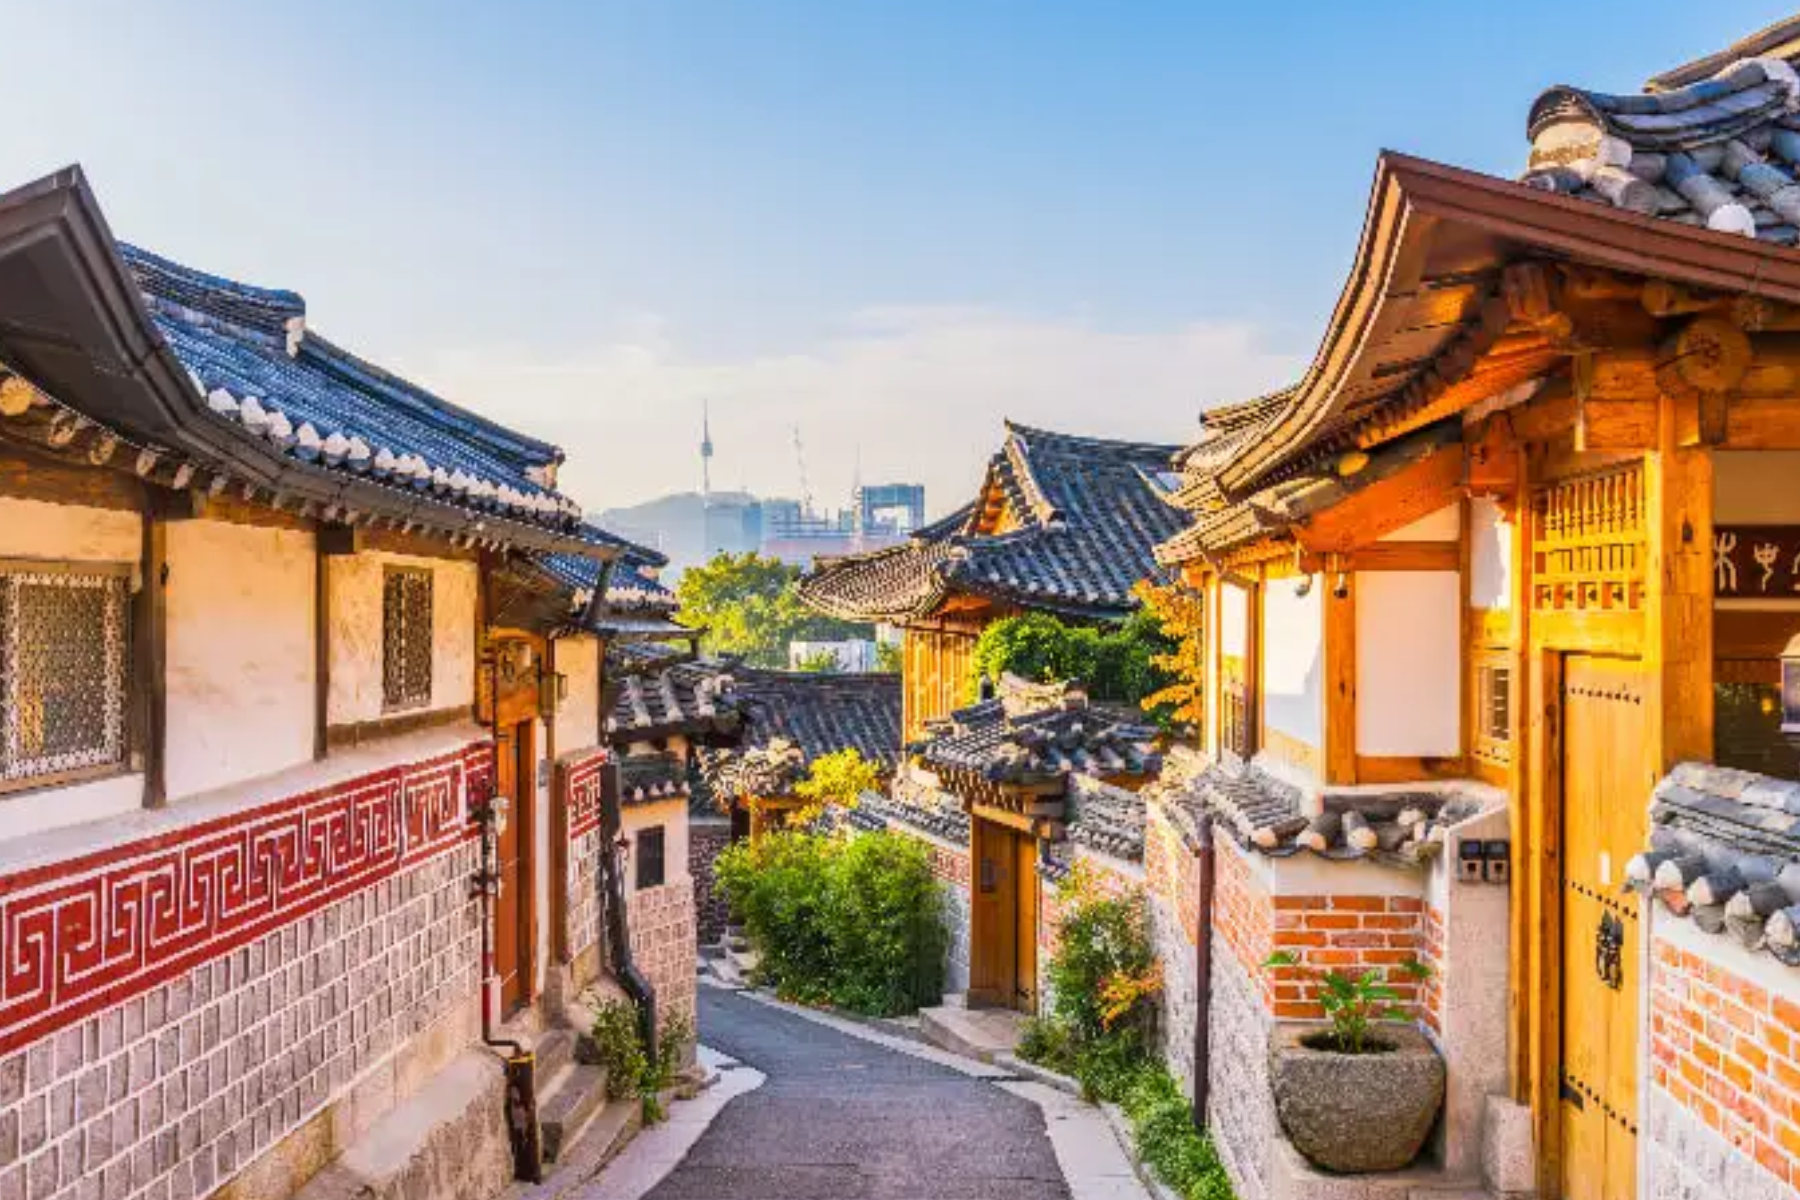 Seoul's colorful Bukchon Hanok villages